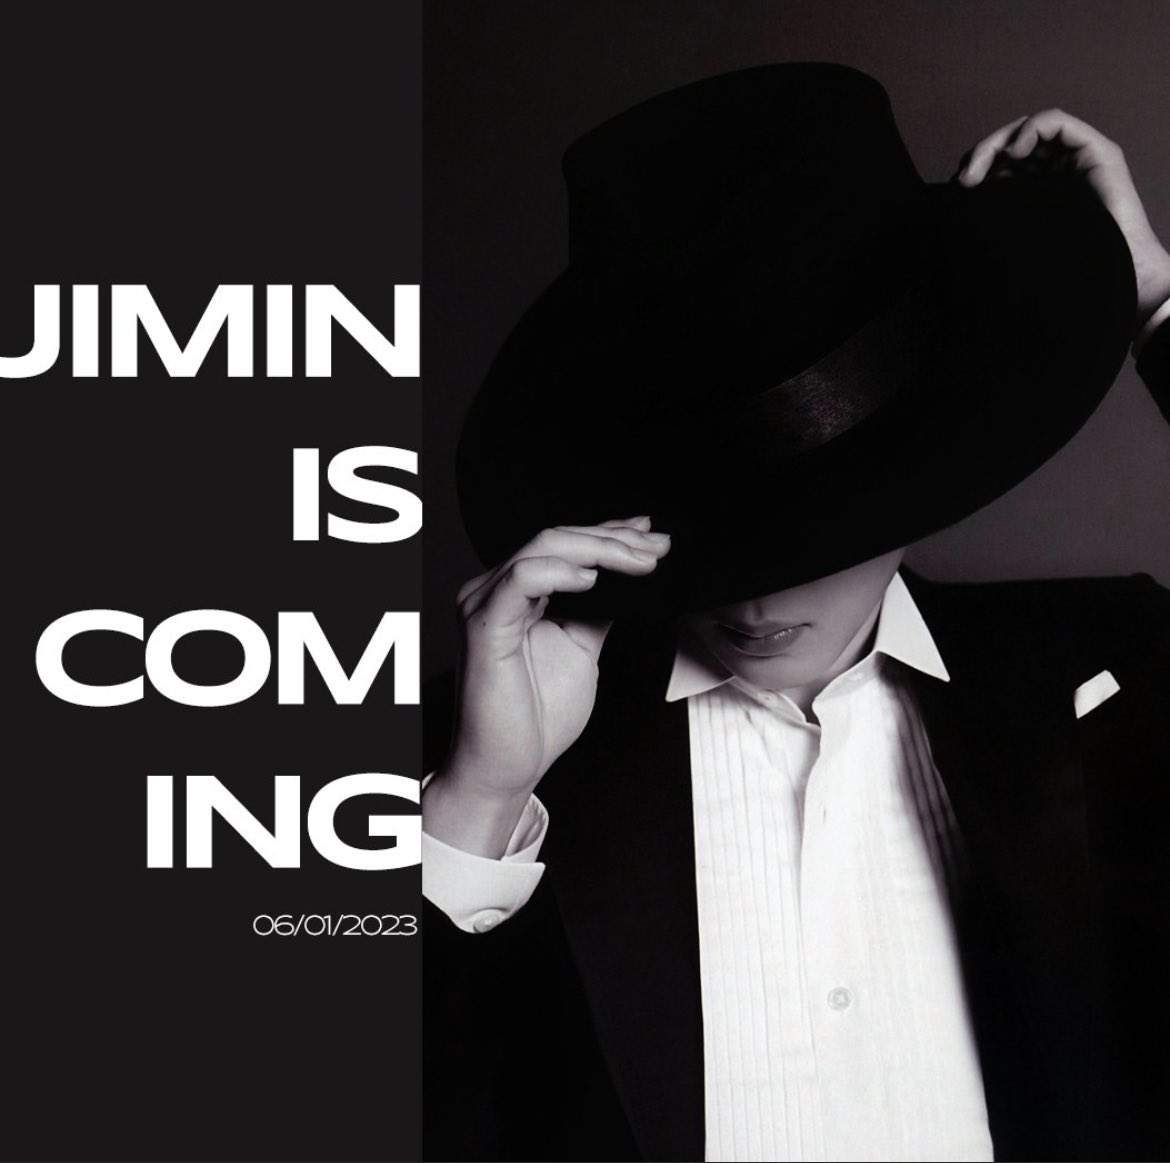 [ANNOUNCEMENT]

JIMIN JUNE 1
JIMIN IS COMING